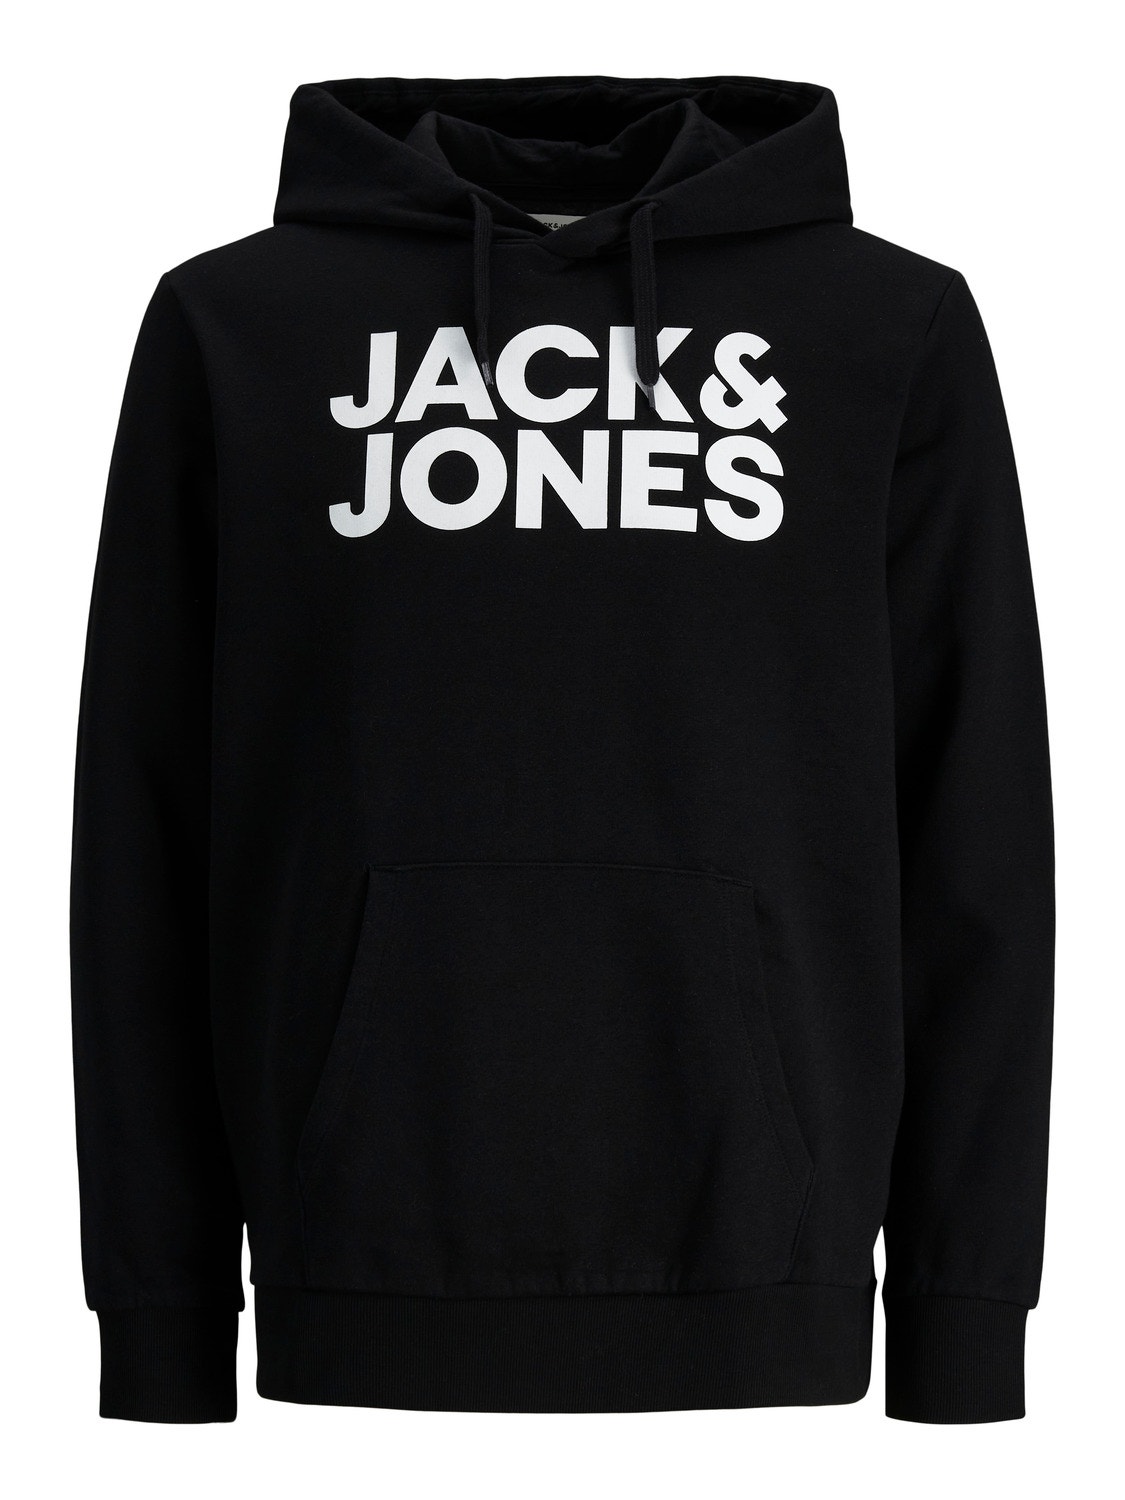 Jack & Jones Logo Kapuzenpullover -Black - 12152840